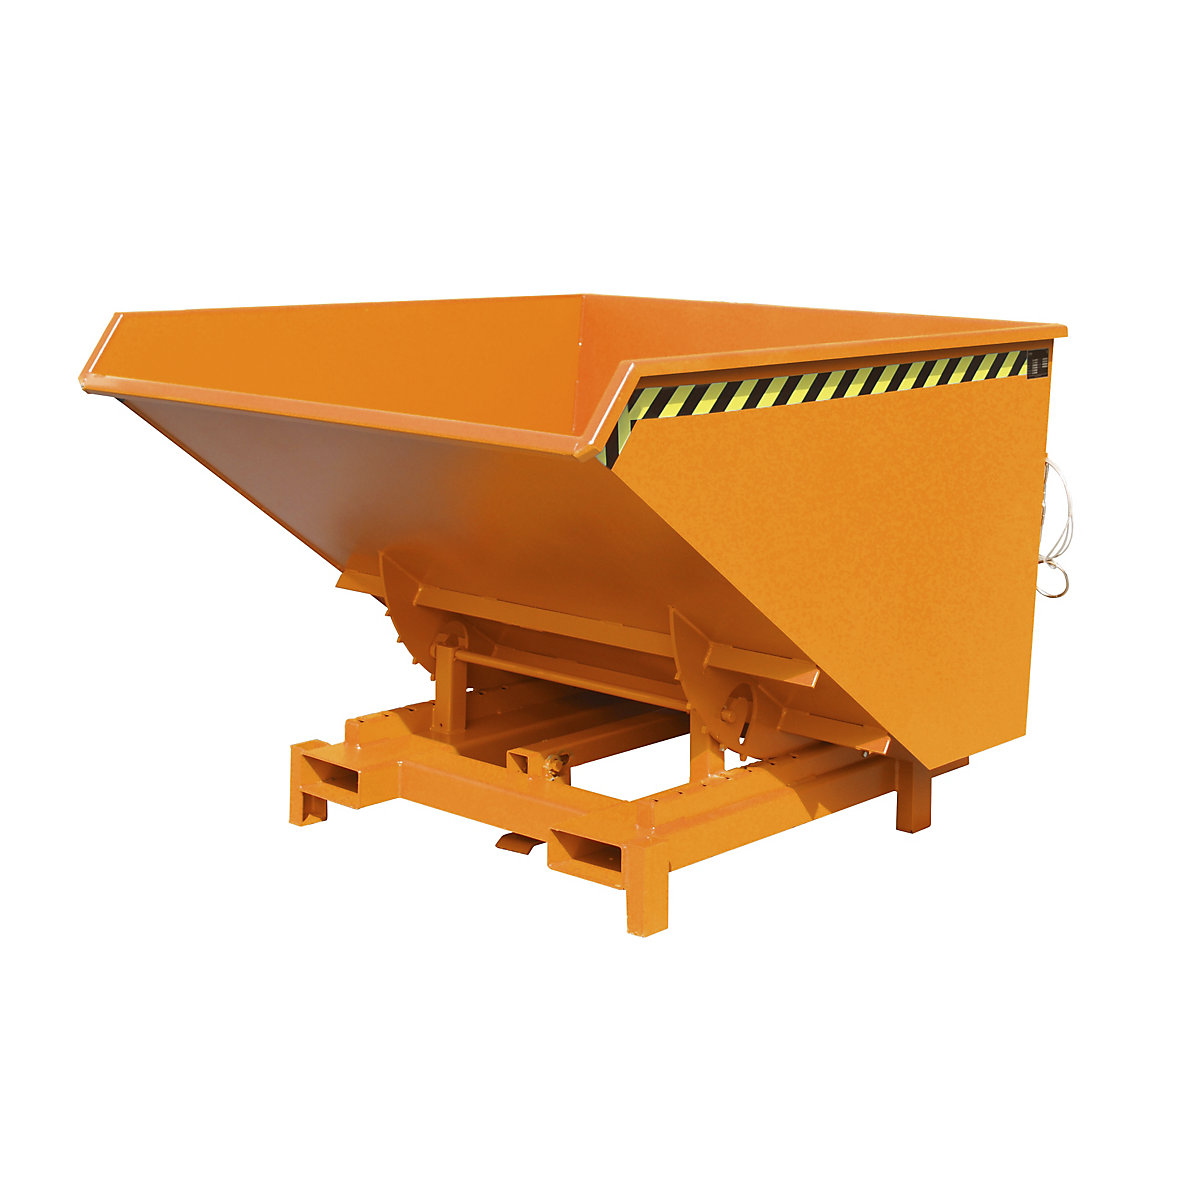 Prekucna posoda za velike obremenitve – eurokraft pro, prostornina 1,7 m³, nosilnost 4000 kg, oranžna RAL 2000-10